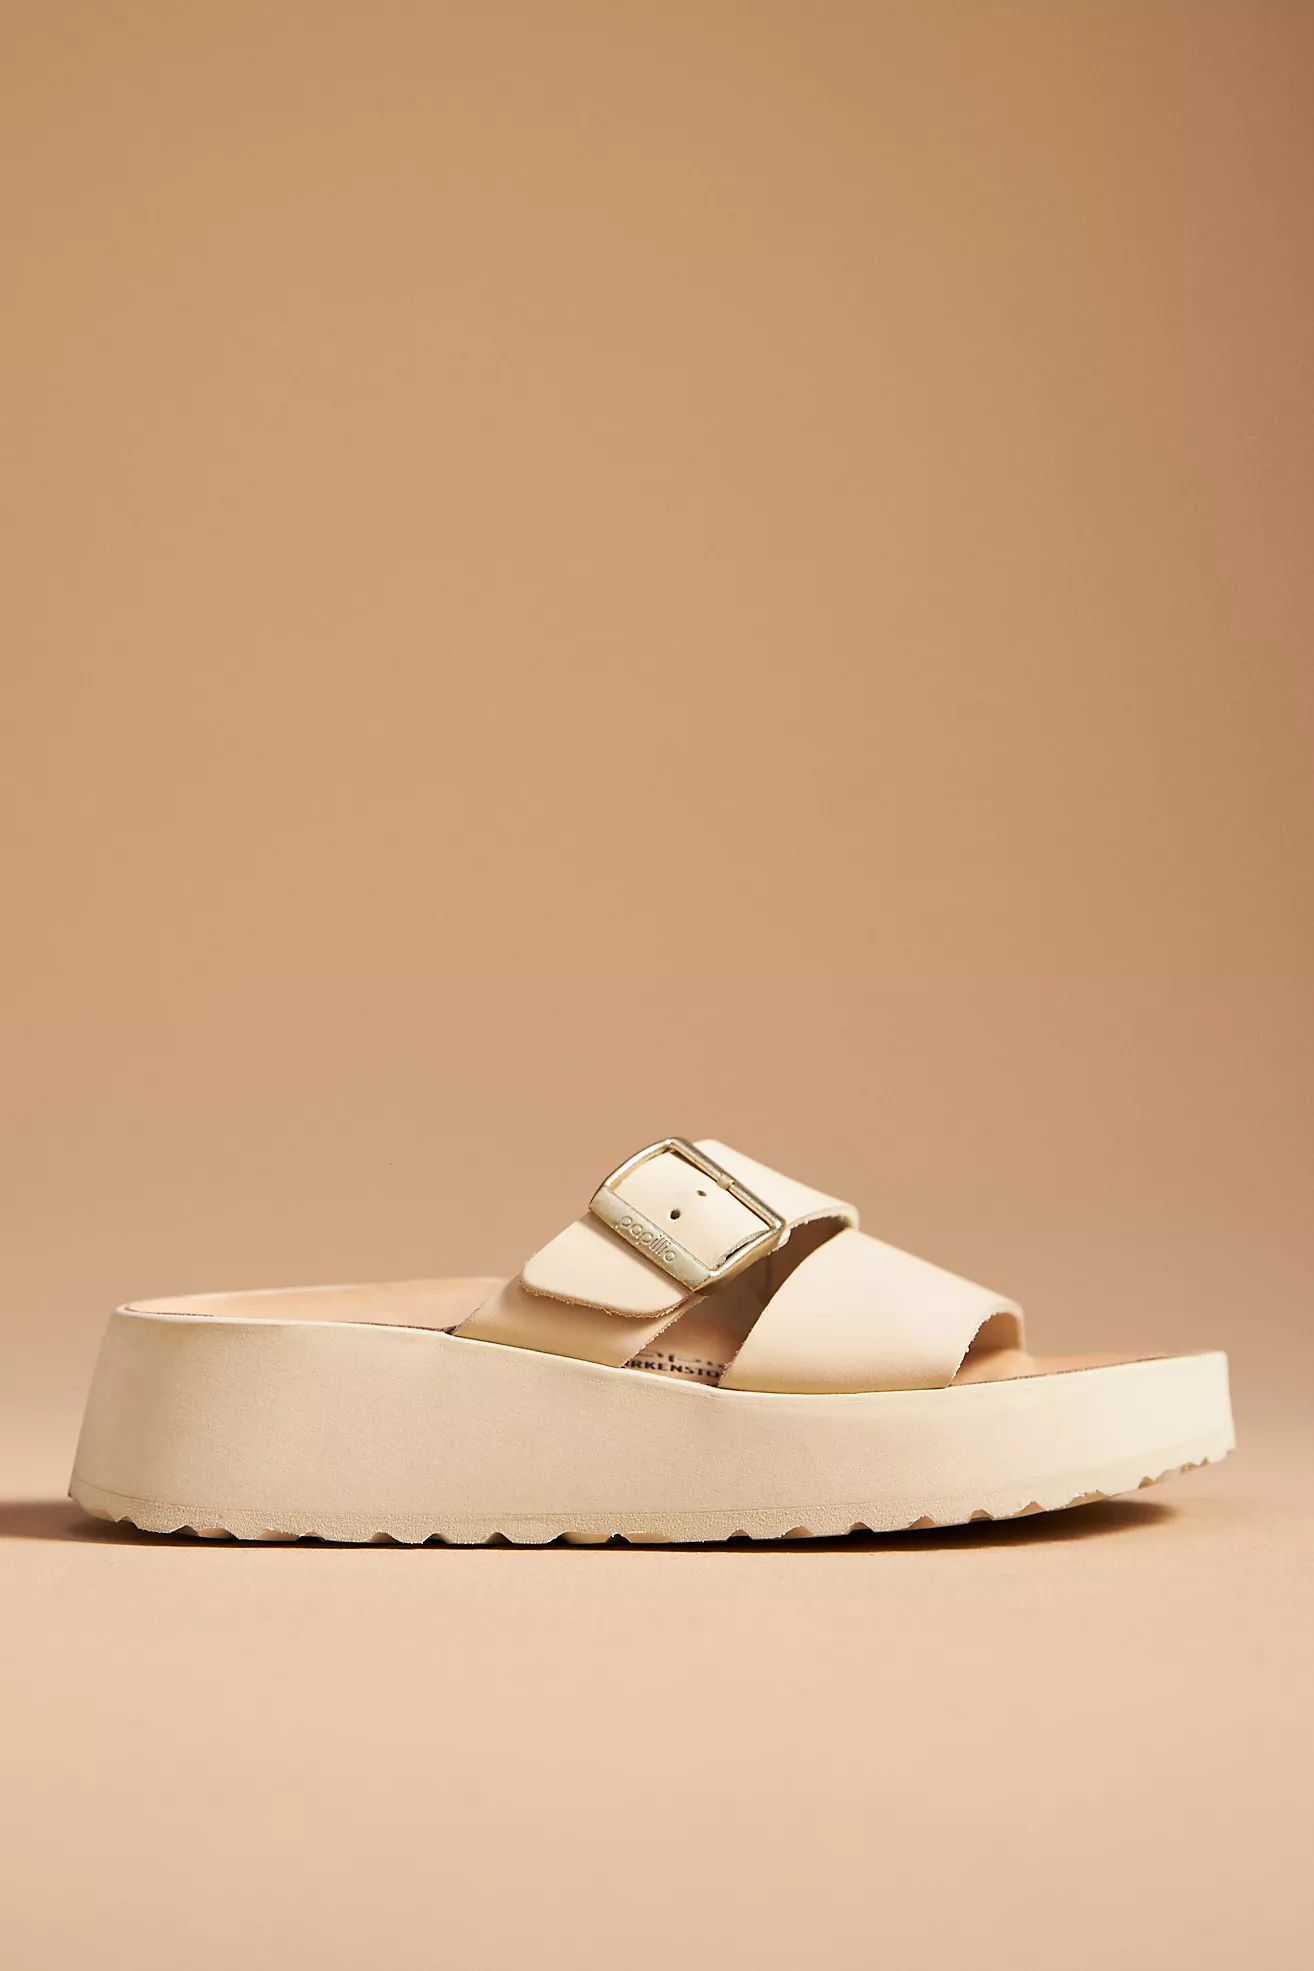 Birkenstock Almina Exquisite Platform Sandals | Anthropologie (US)